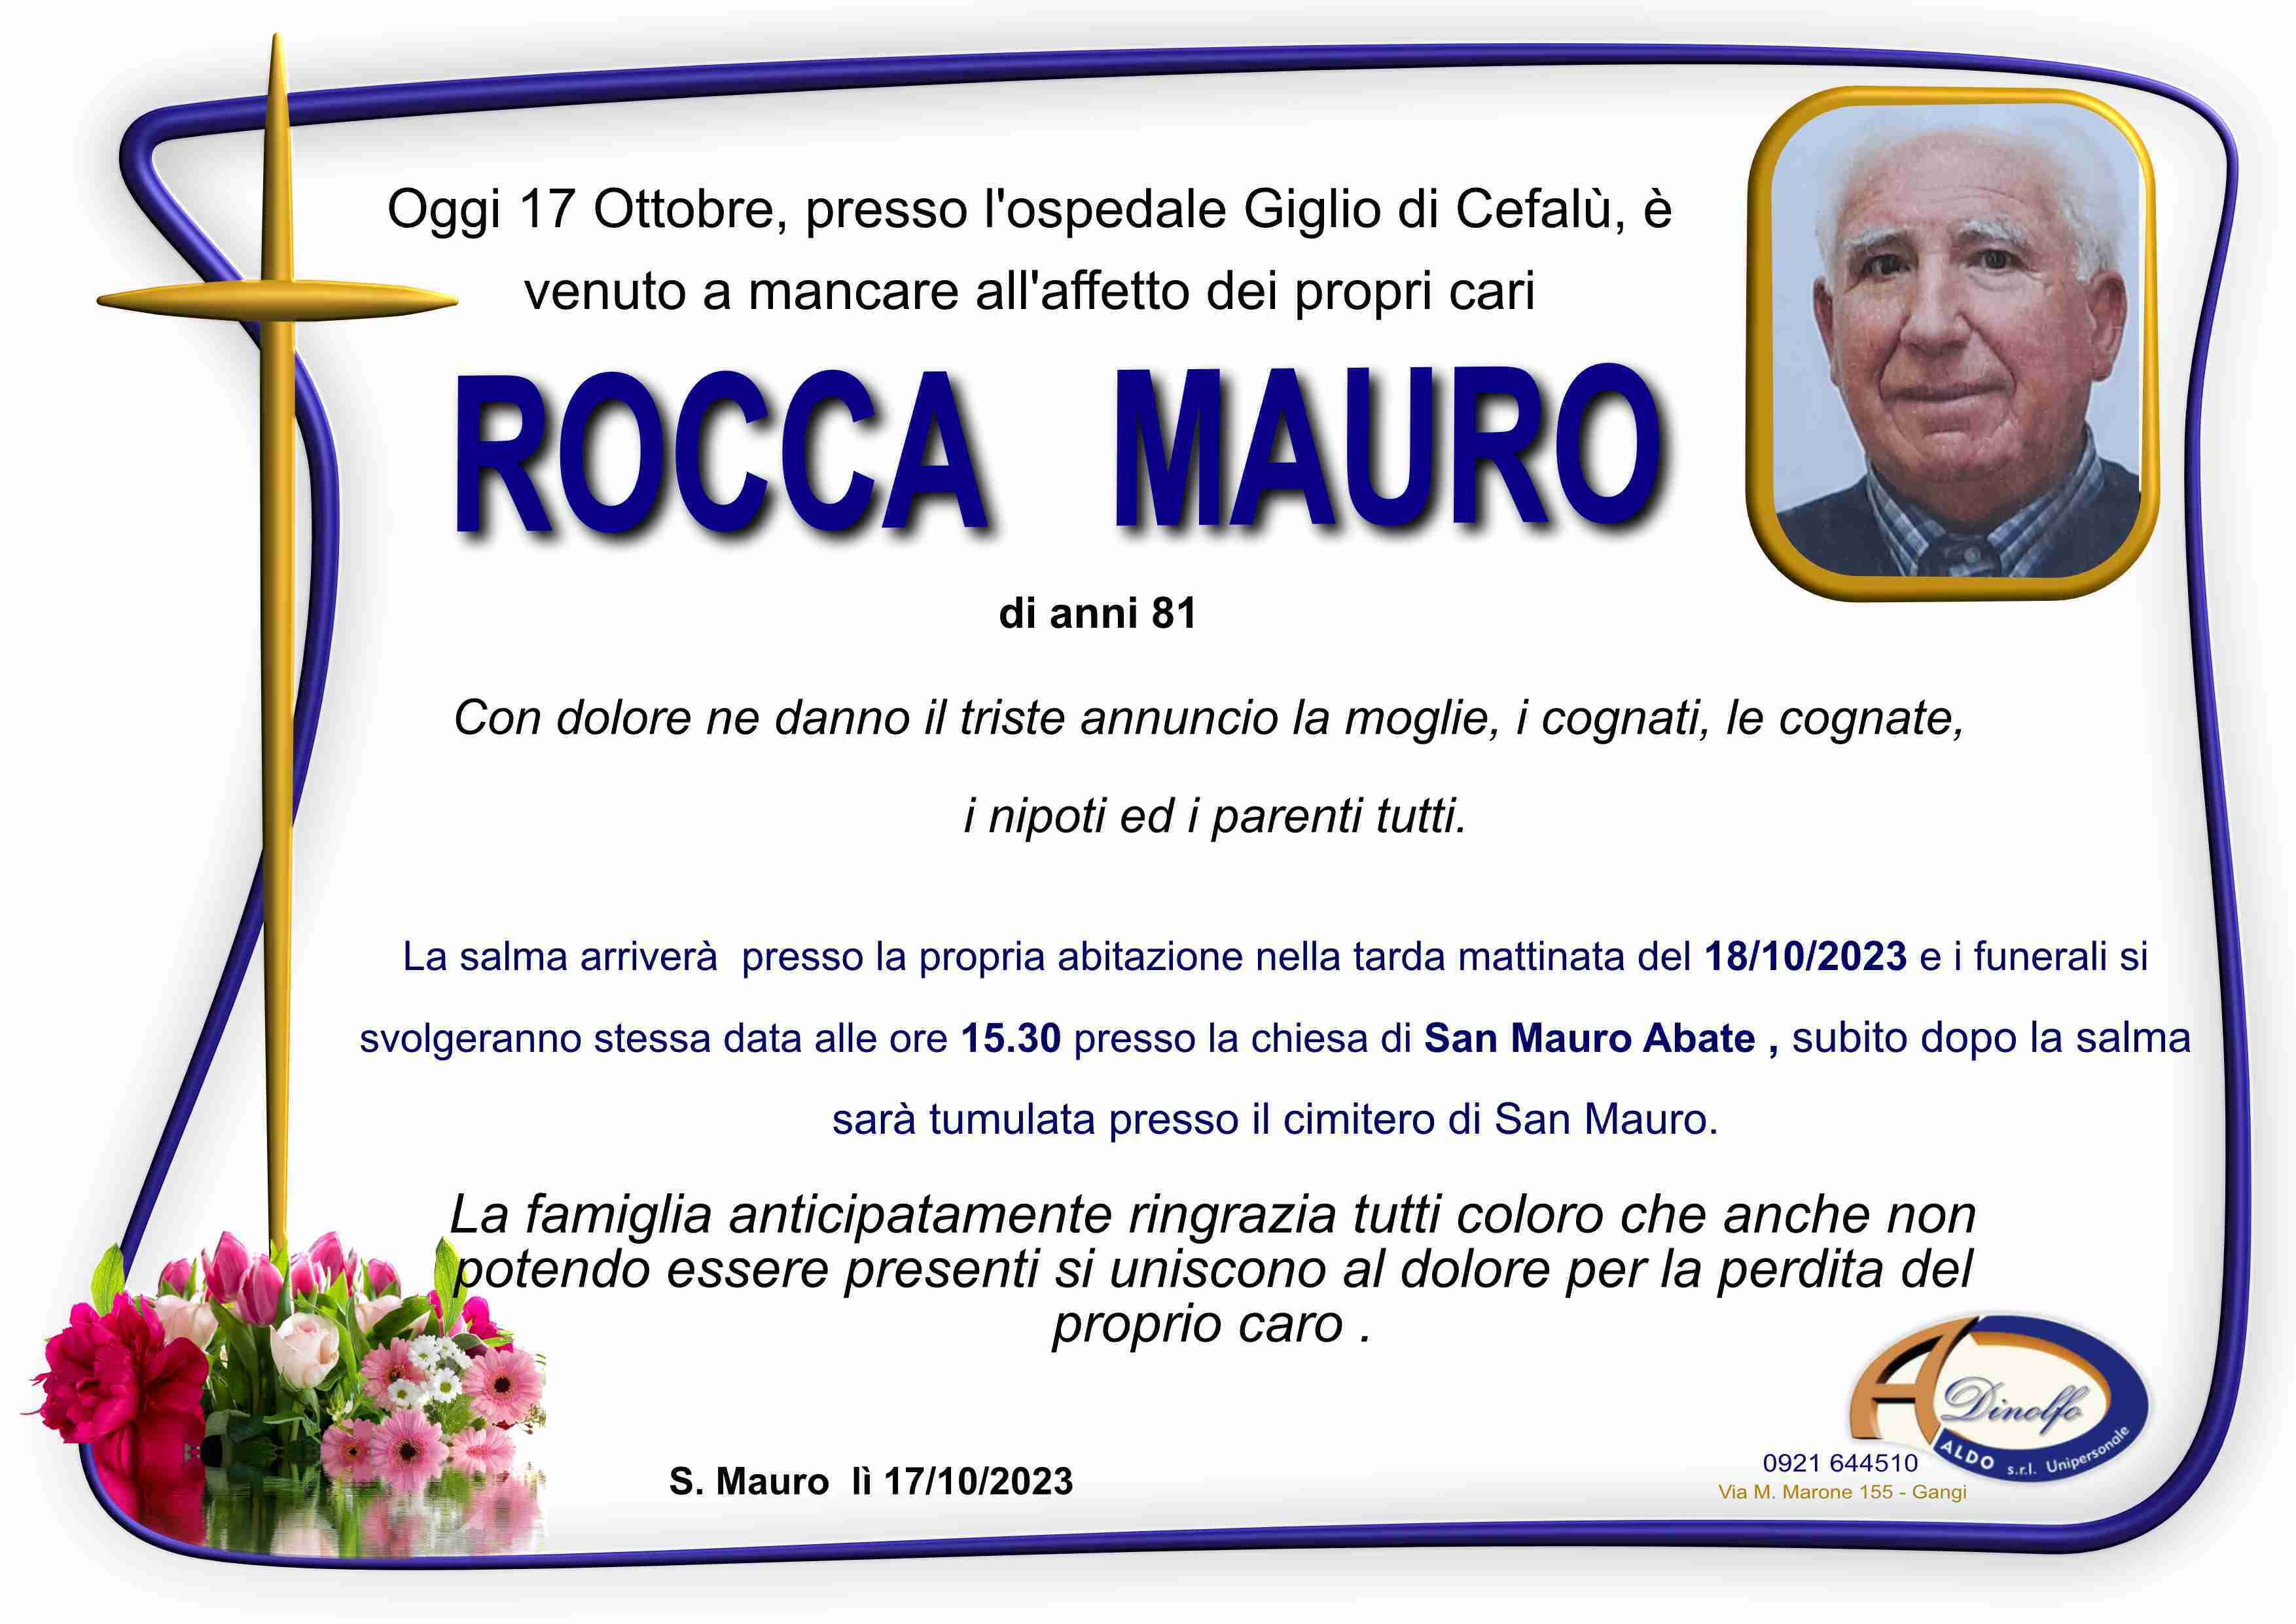 Mauro Rocca